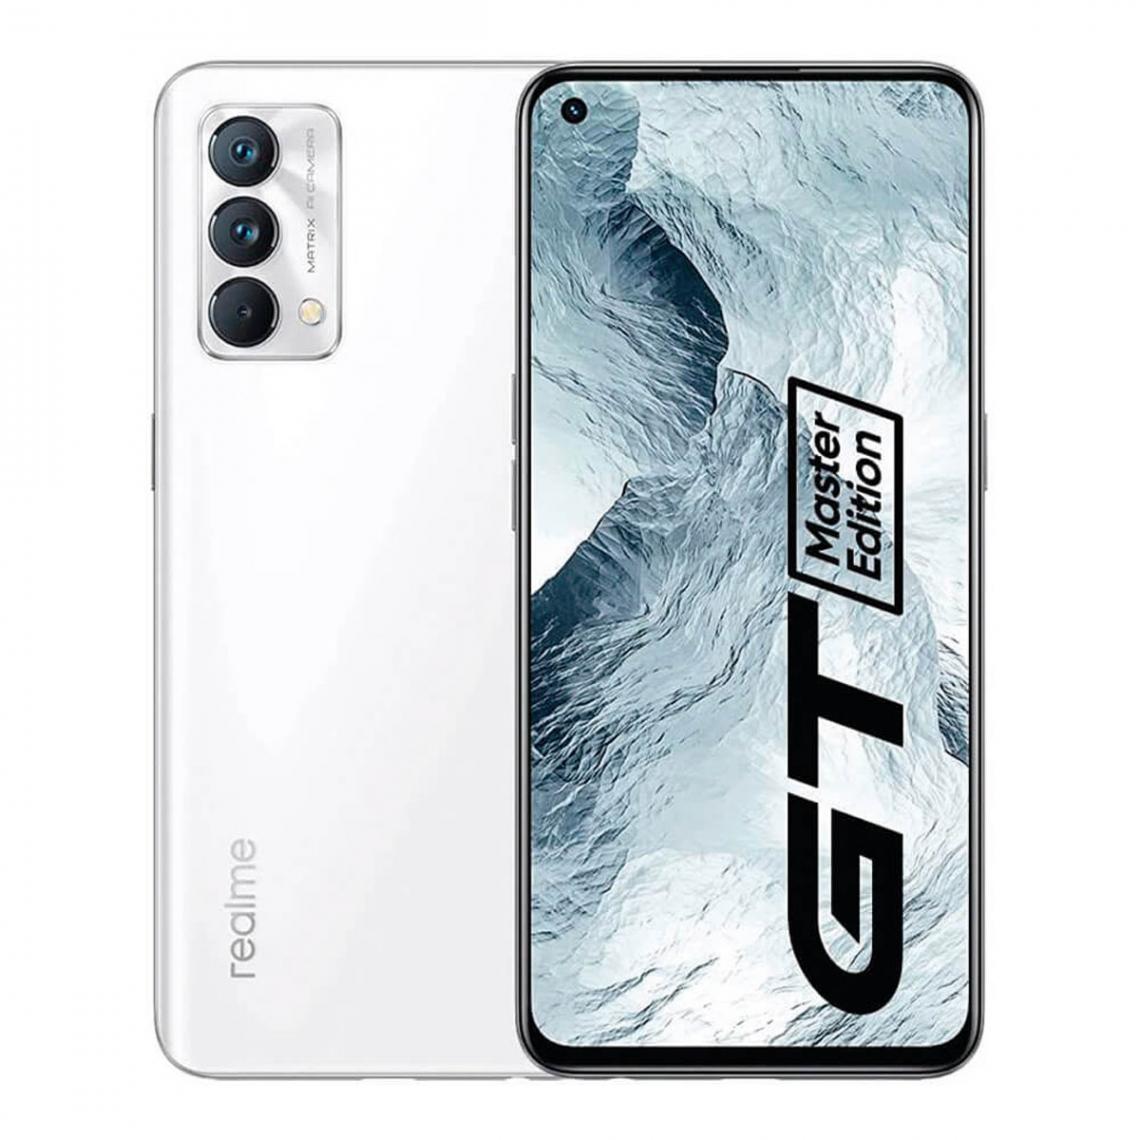 Realme - Realme GT Master Edition 5G 6GB/128GB Blanc (Luna White) Double SIM - Smartphone Android